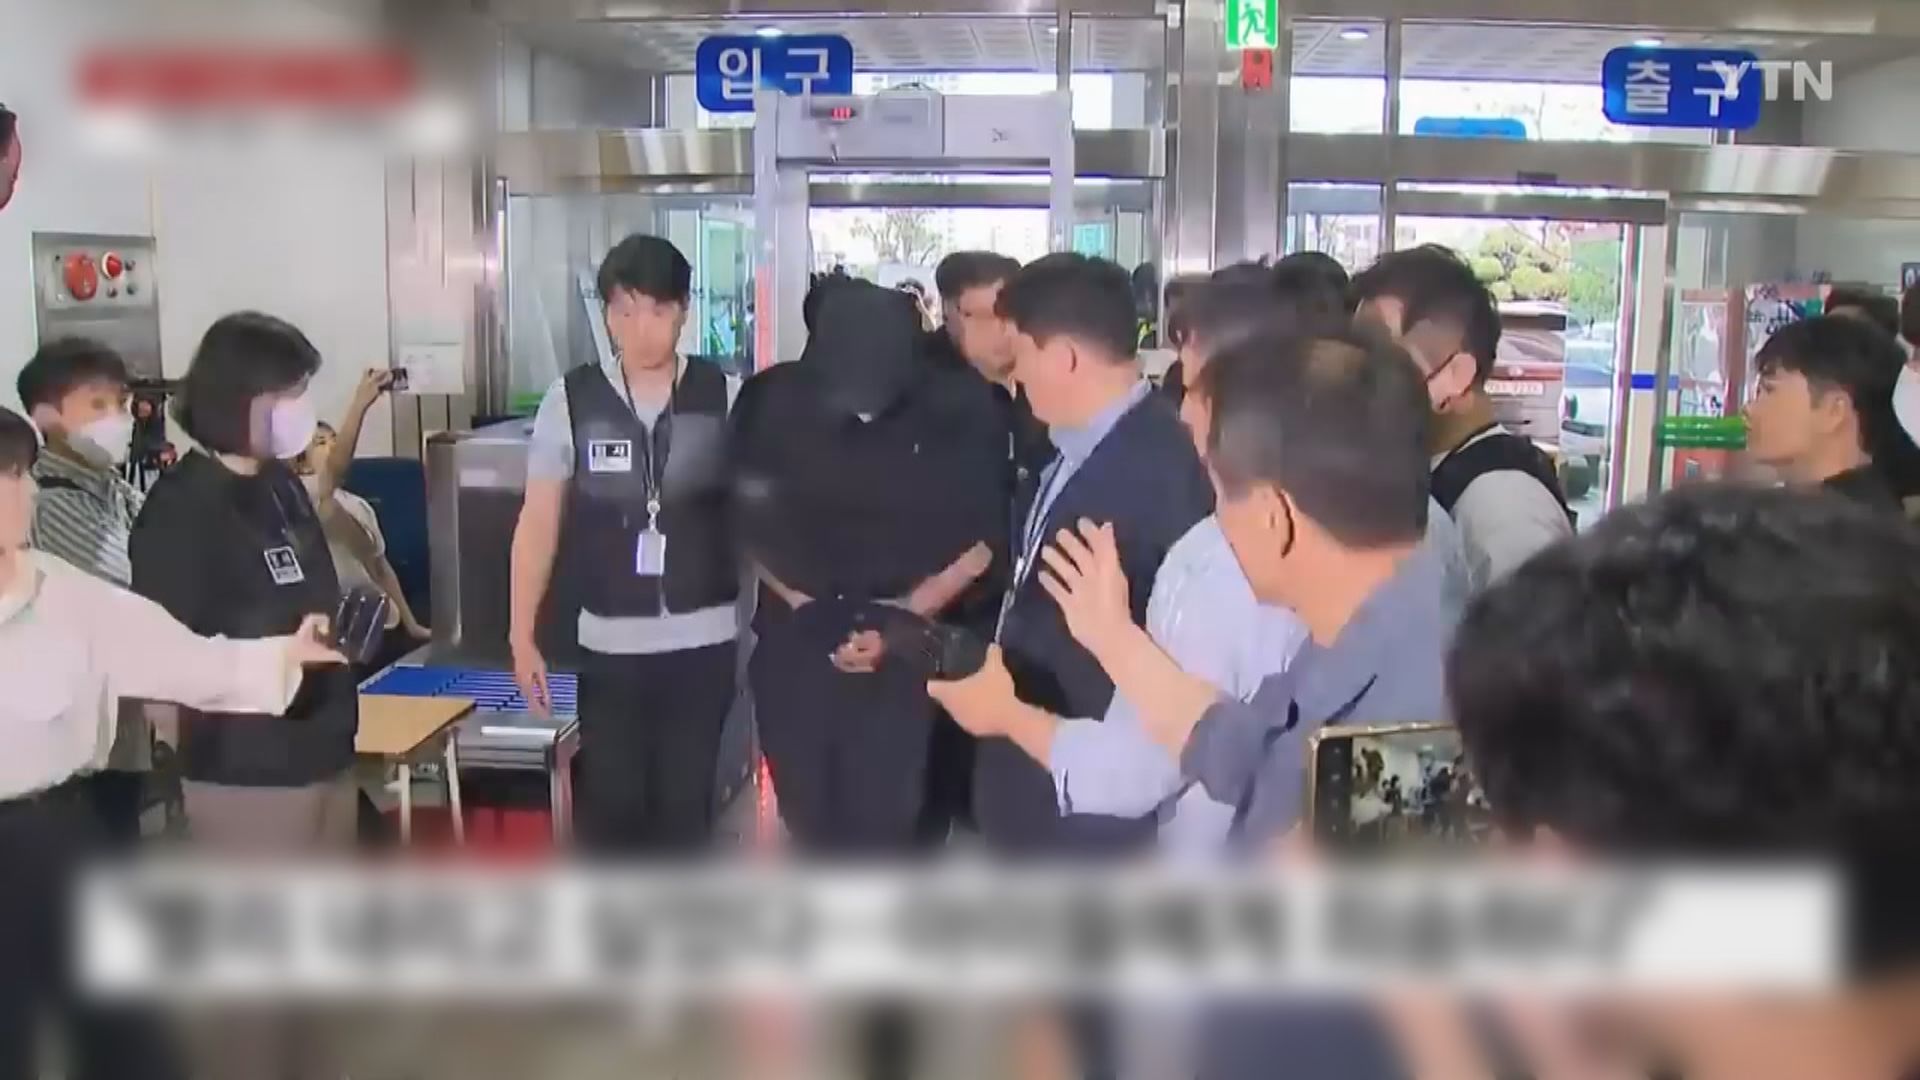 韓亞內陸機艙門打開事件 法院批准逮捕男疑犯